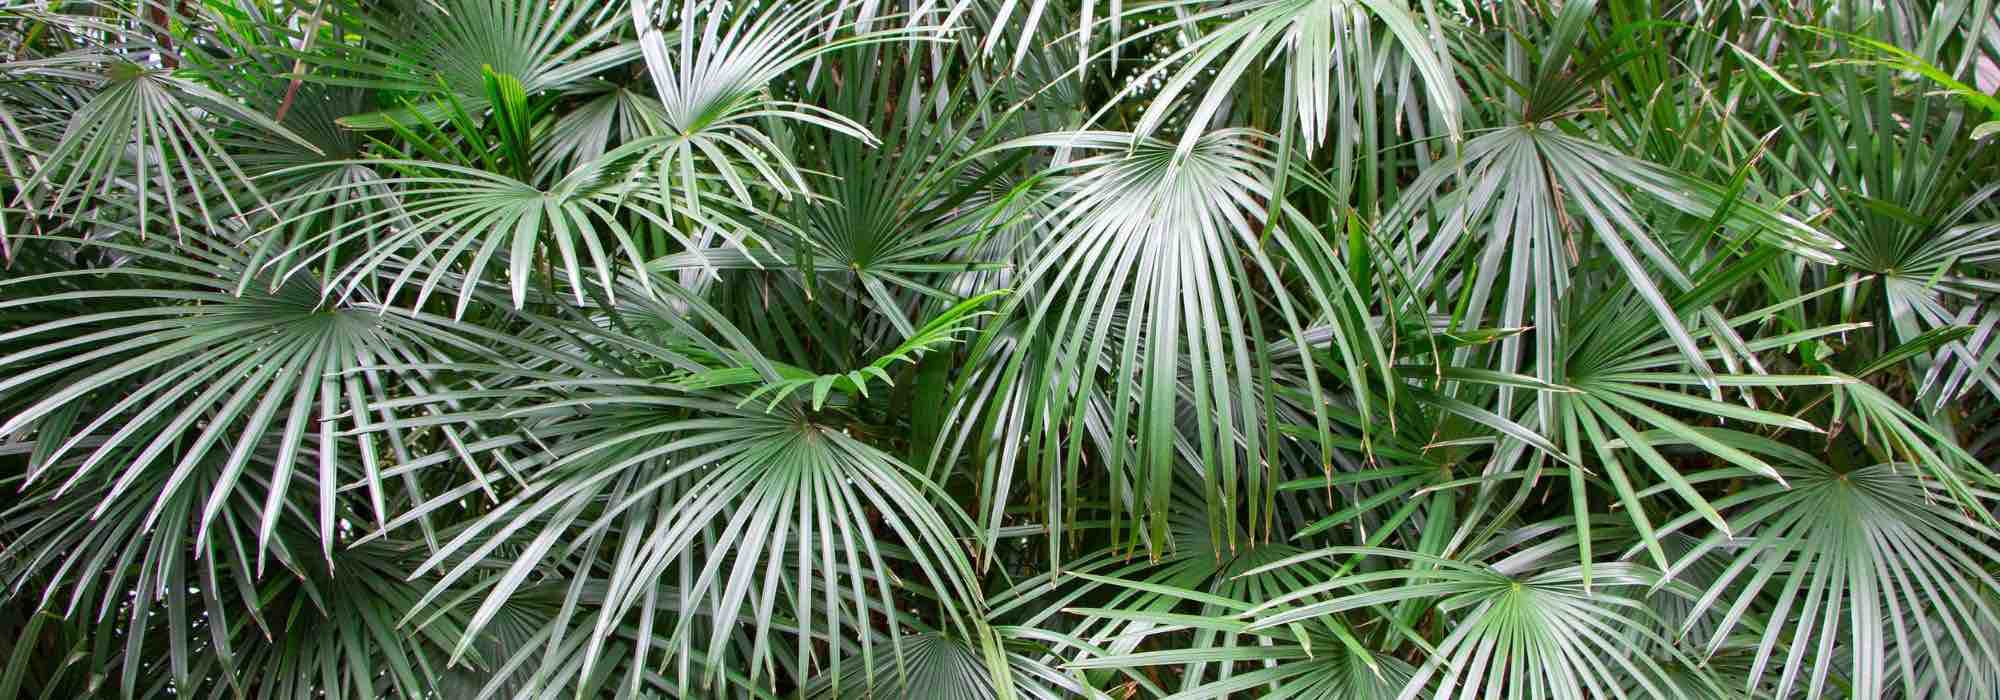 7 palmiers nains pour terrasse, balcon ou petit jardin